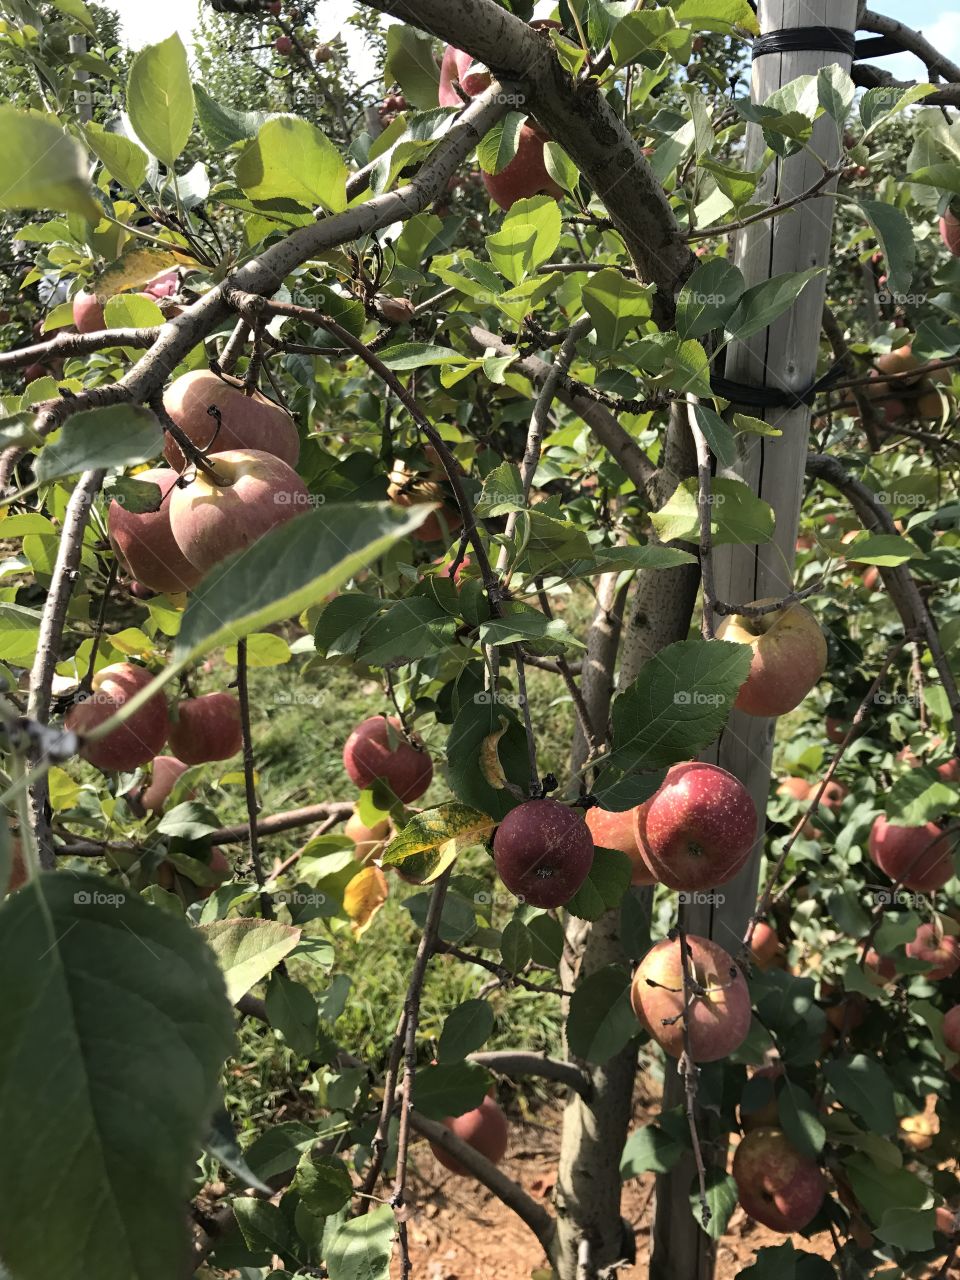 Apples grow on trees